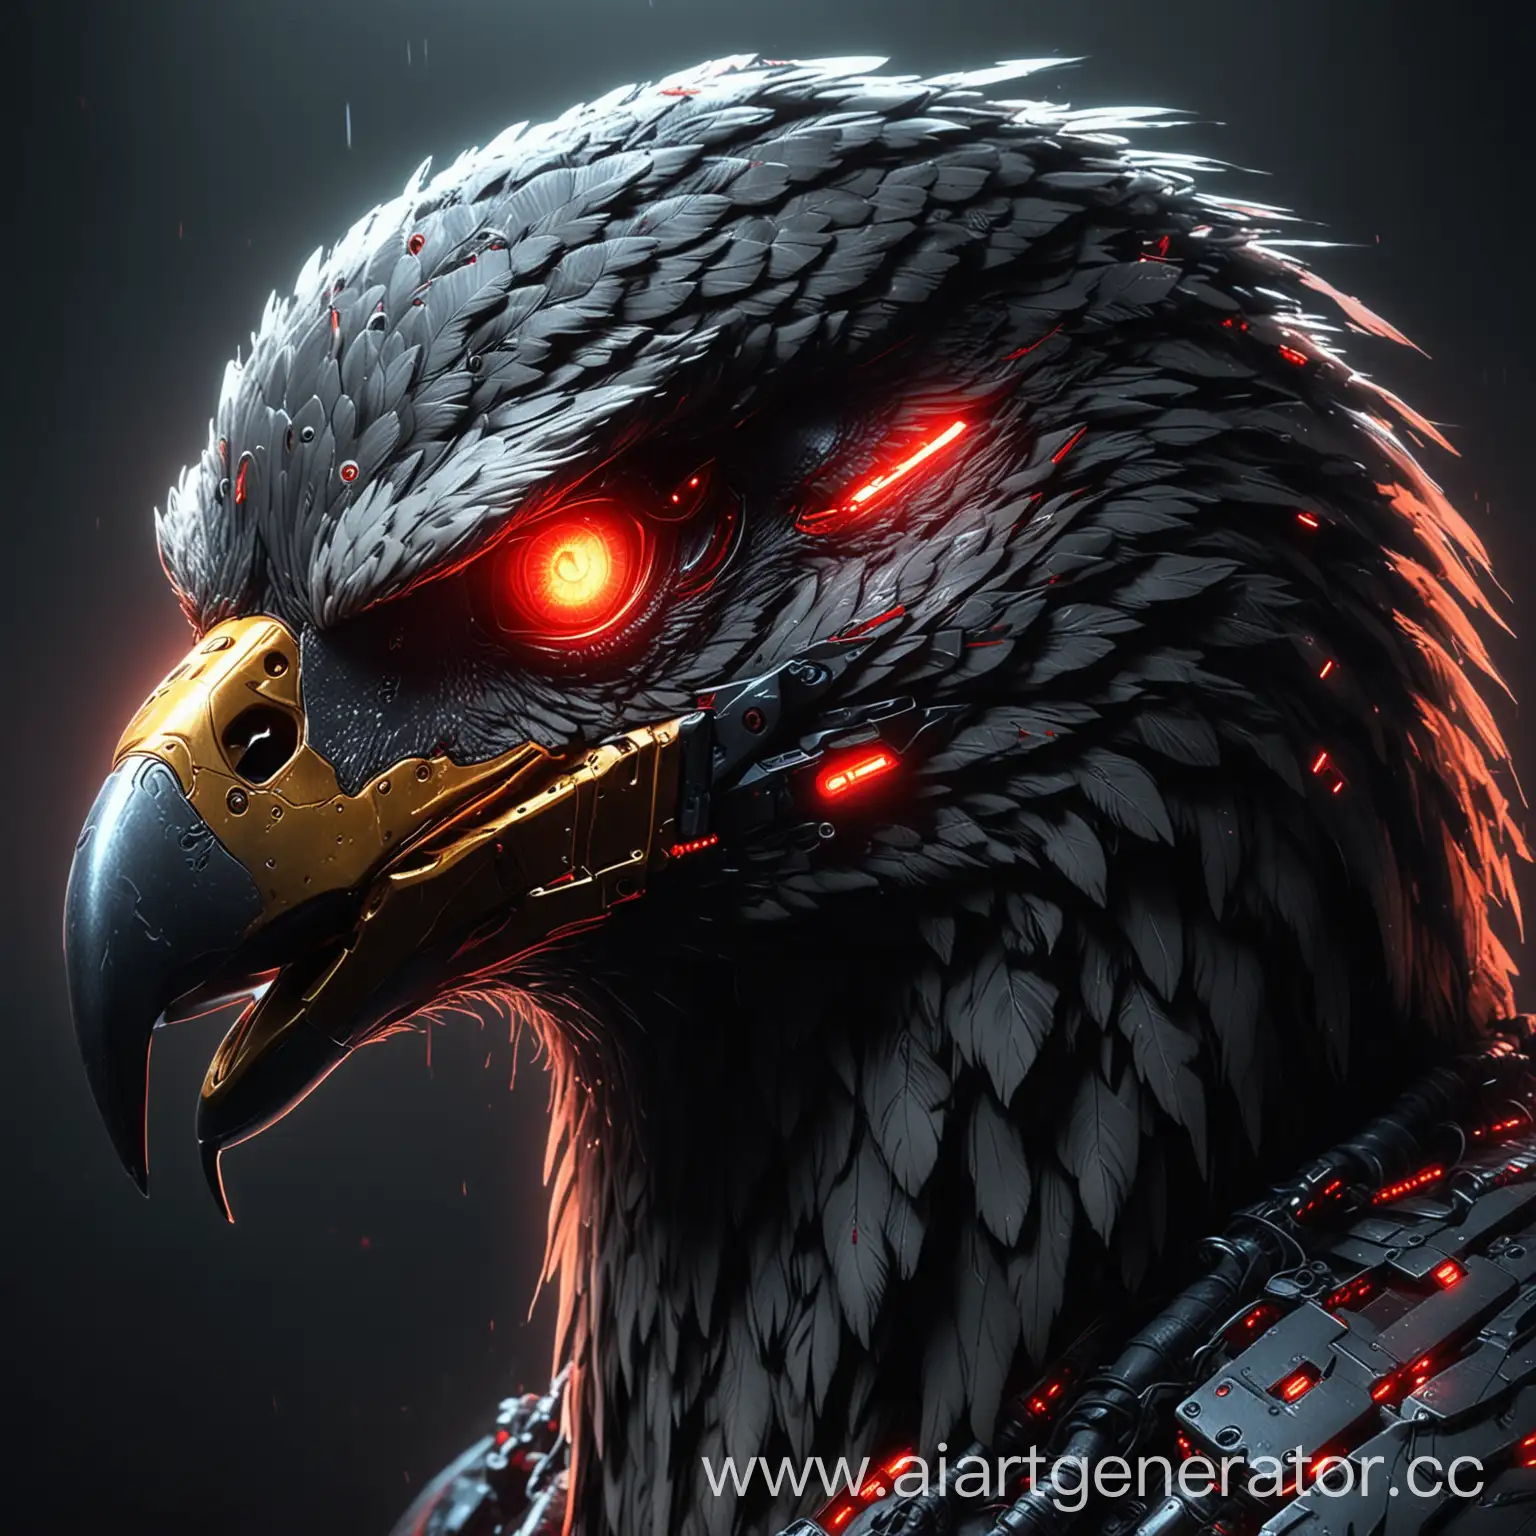 Нарисуй кибер орла у которого светятся глаза красным цветом , в профиль, в стиле киберпанка, в ультра высоком качестве 4к